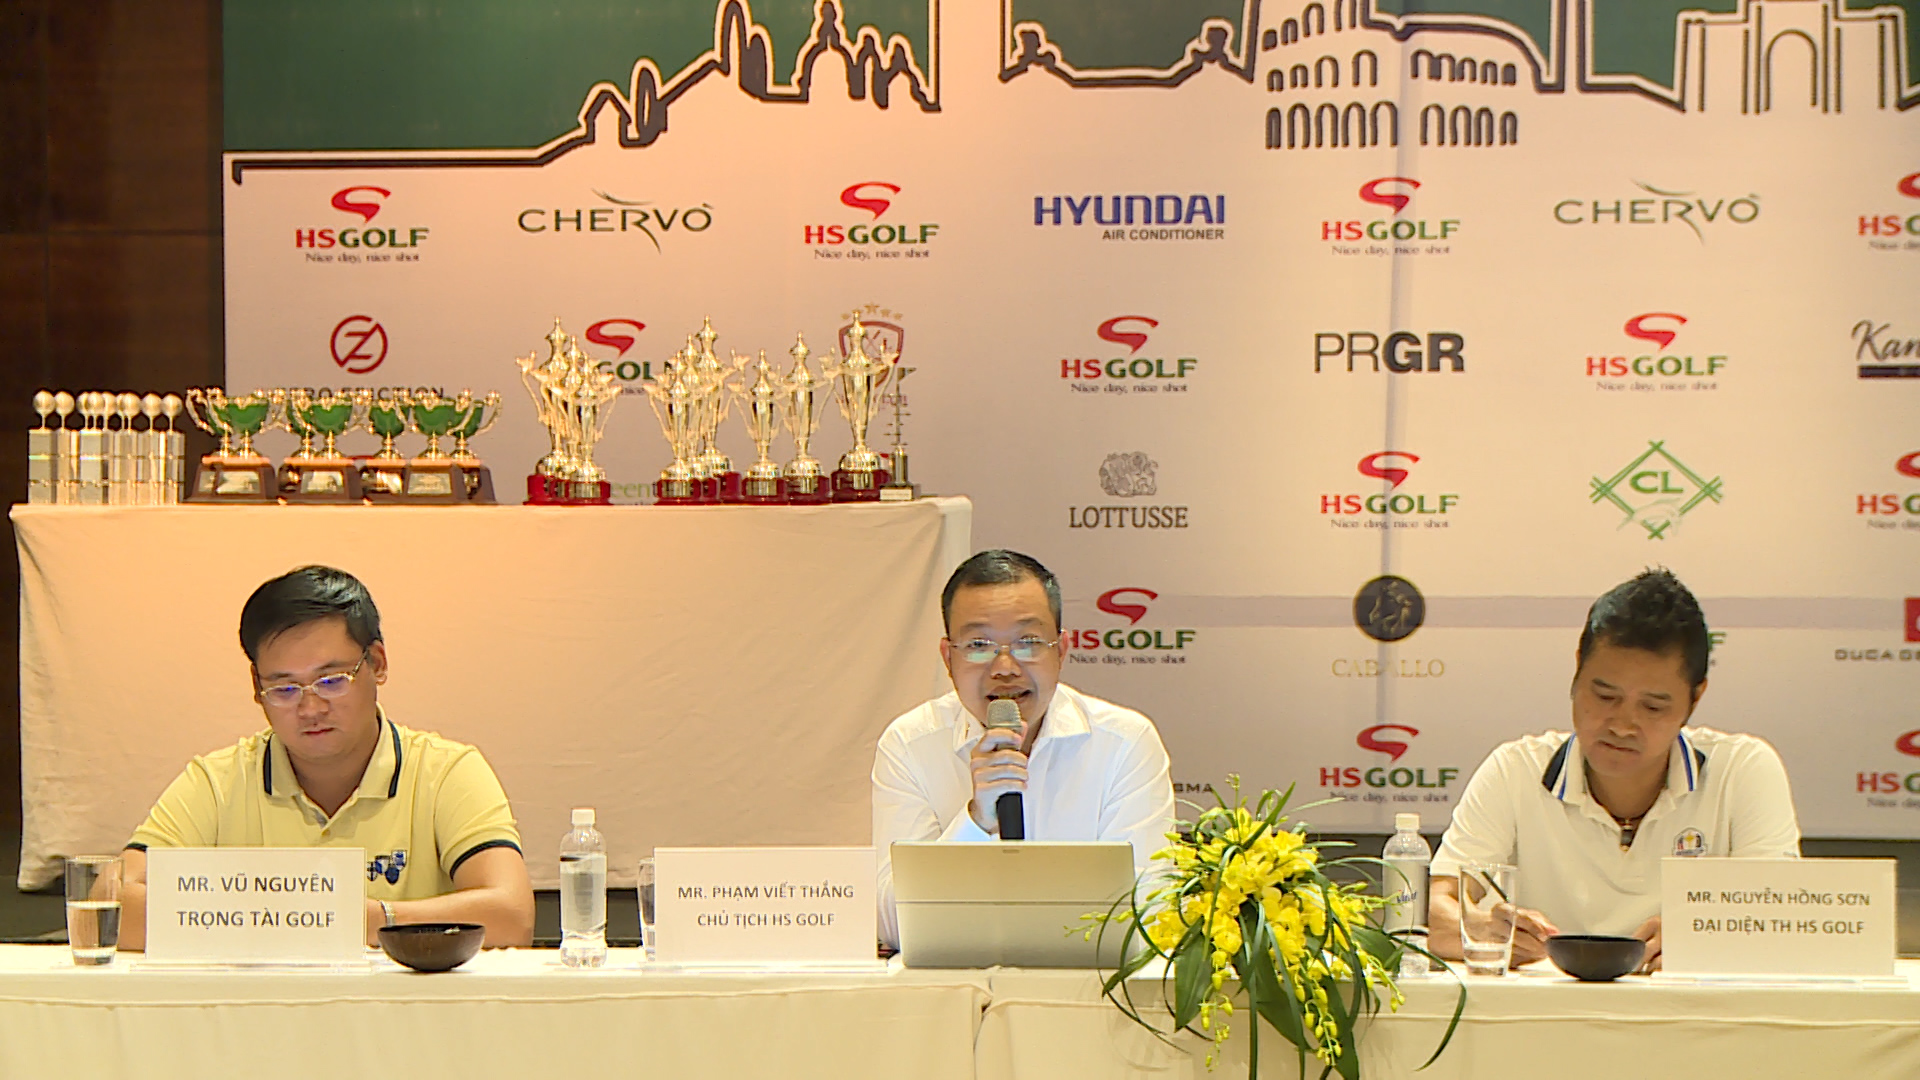 Họp báo công bố giải "Chervo Vietnam Open Championship 2018"